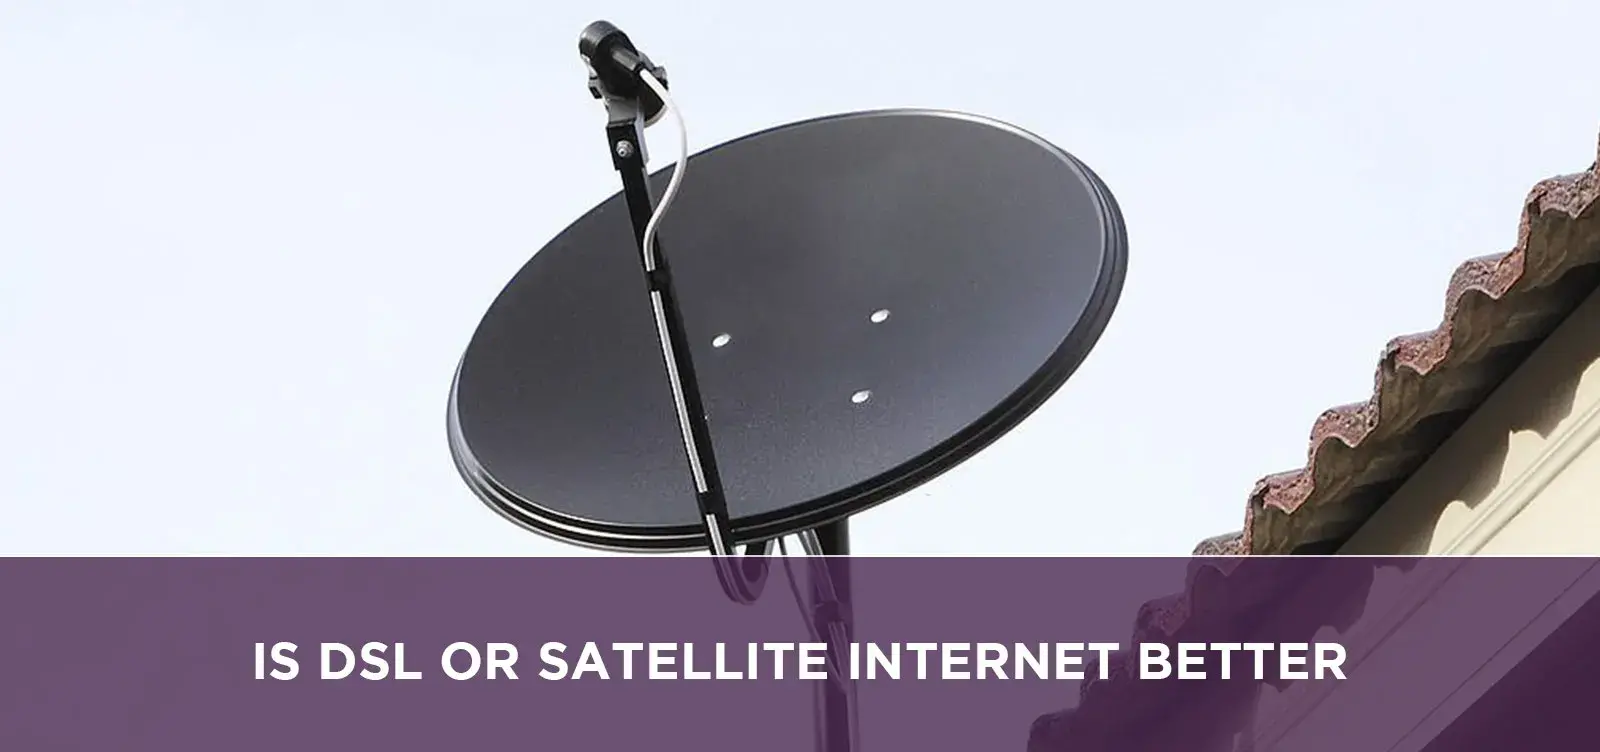 Is Dsl Or Satellite Internet Better?